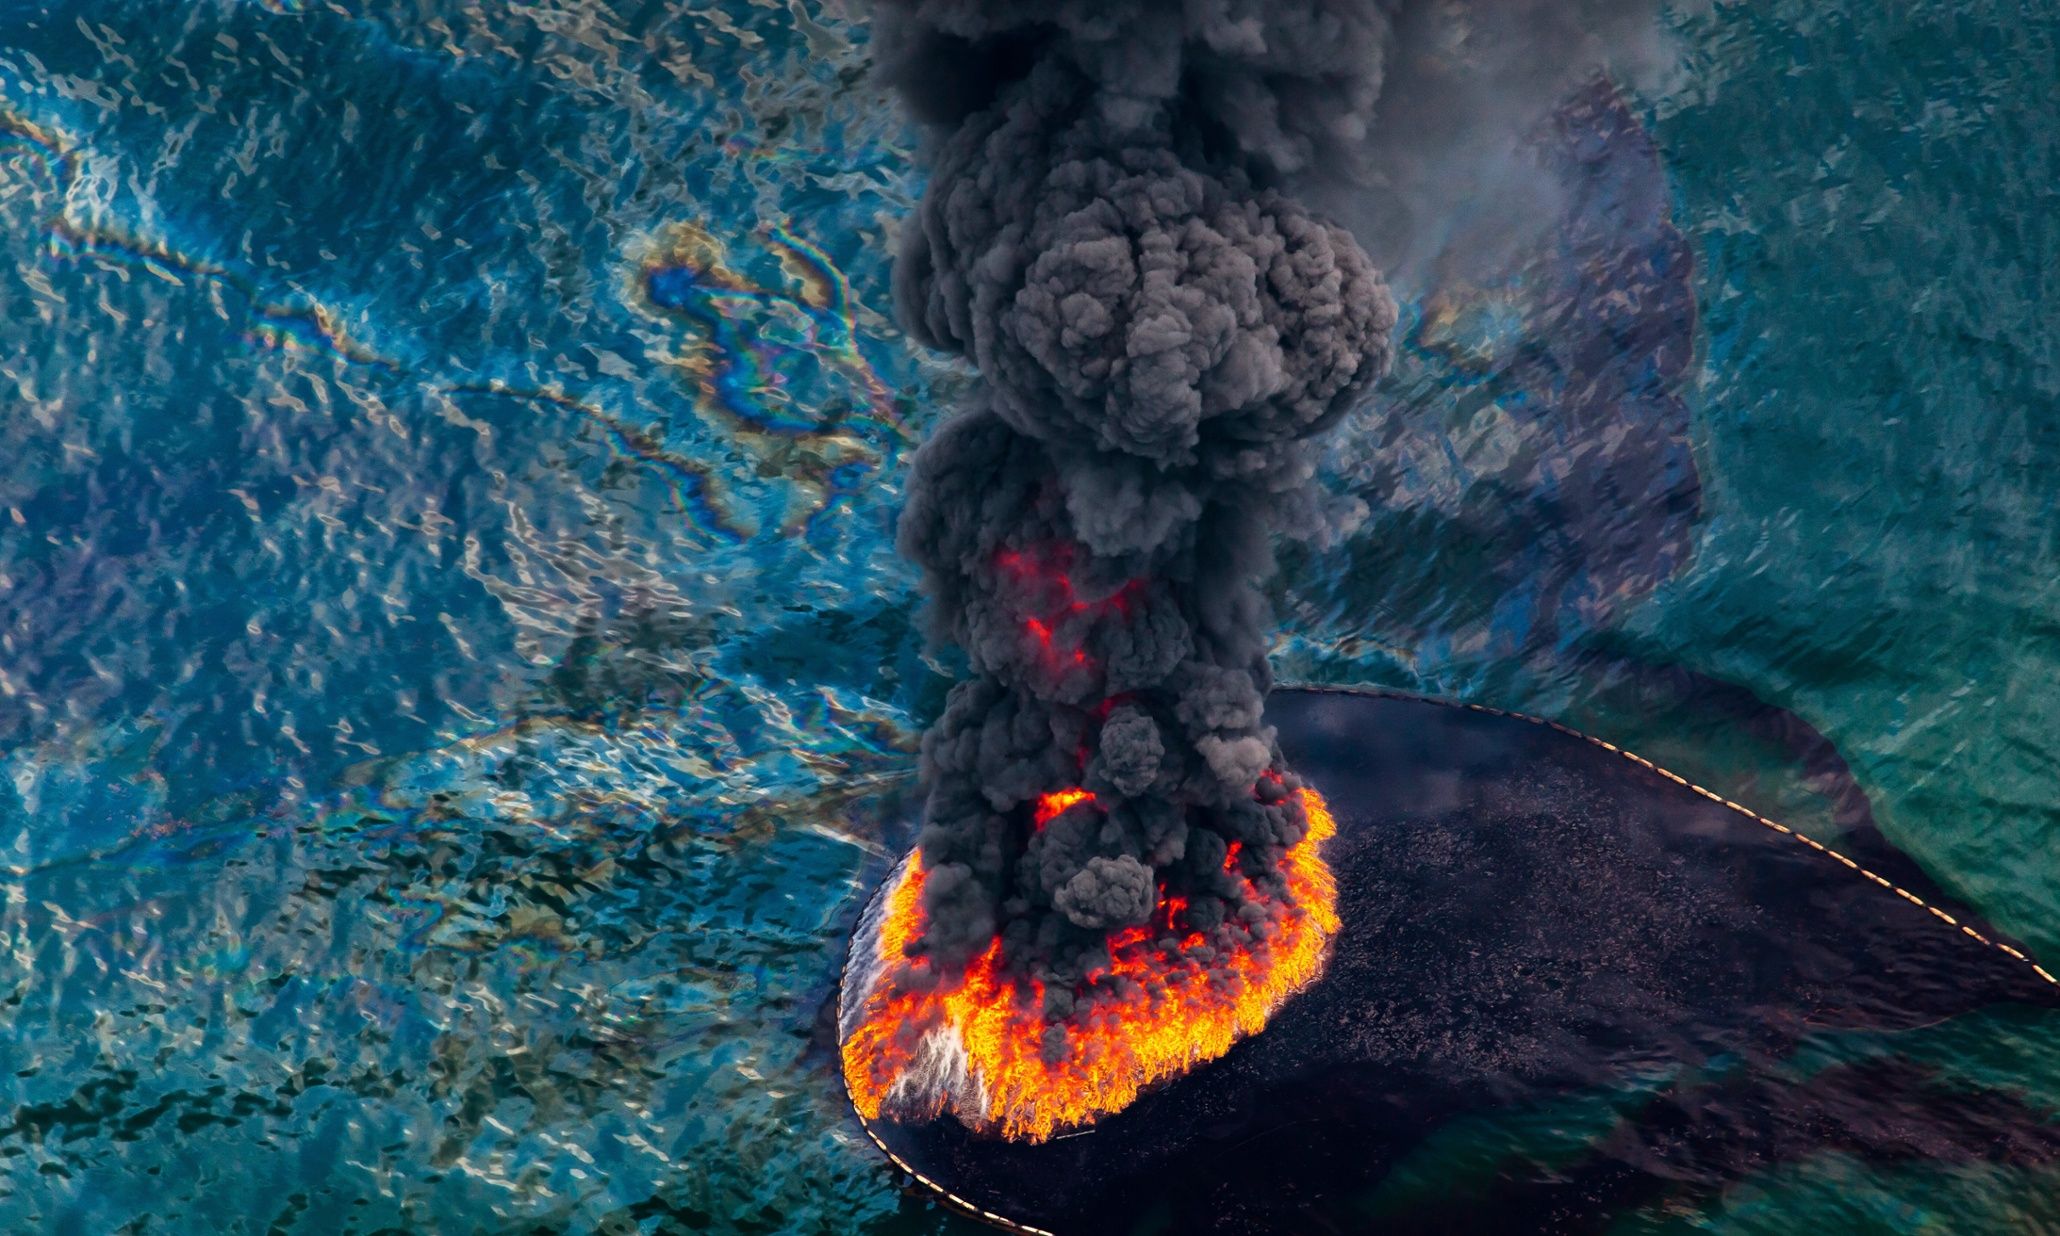 14 апреля 2010. Разлив нефти в мексиканском заливе 2010 разлив нефти. Взрыв на нефтяной платформе в мексиканском заливе 2010. Взрыв нефтяной платформы Deepwater Horizon. Взрыв нефтяной платформы Deepwater Horizon - 20 апреля 2010 года.